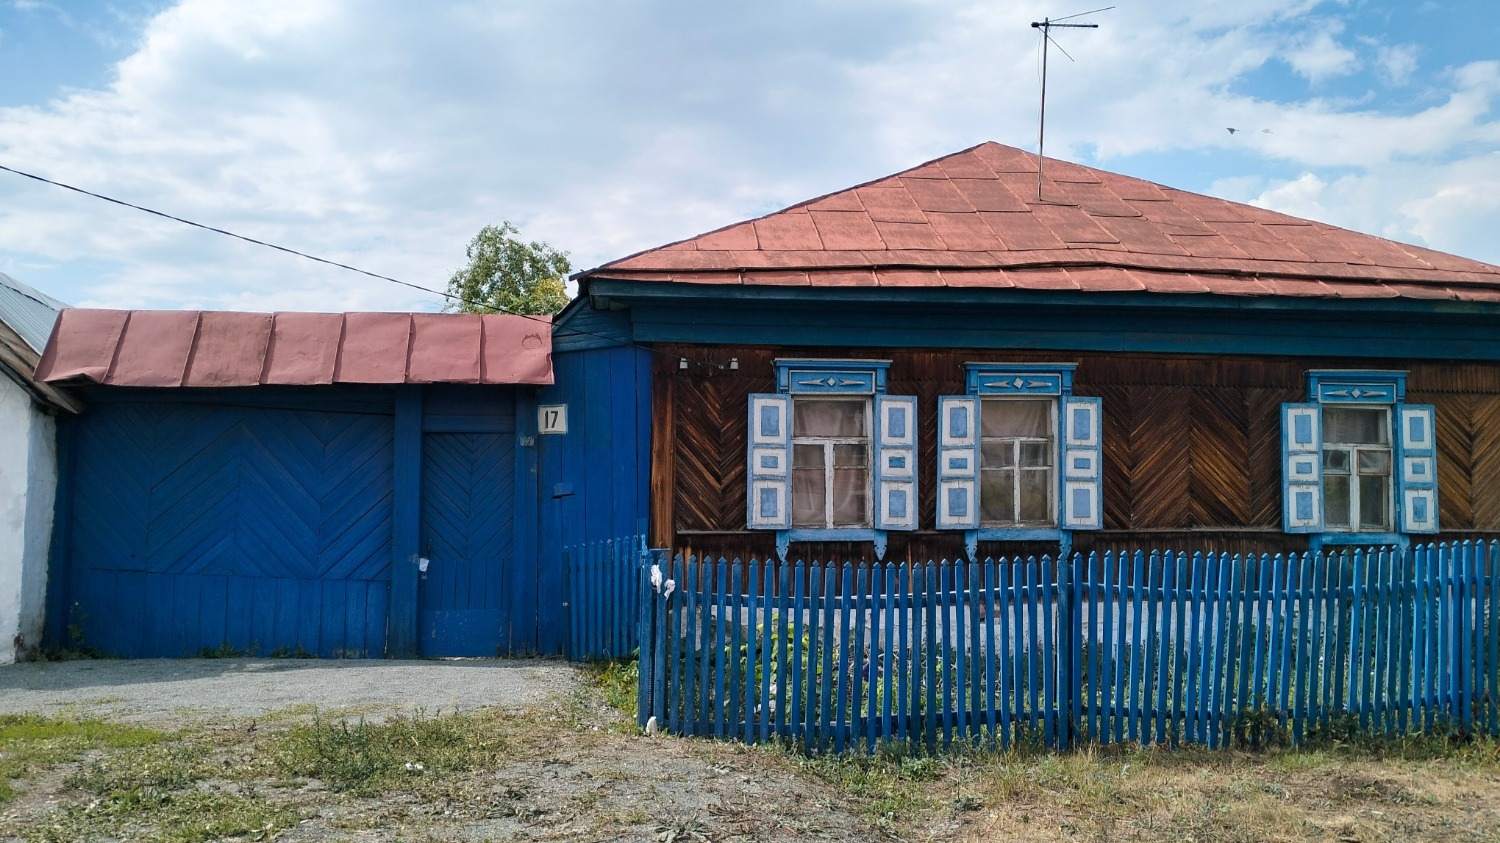 Дом Ческидовых по улице Фестивальной, 17 в поселке Смолино. Теперь его называют домом маньяка